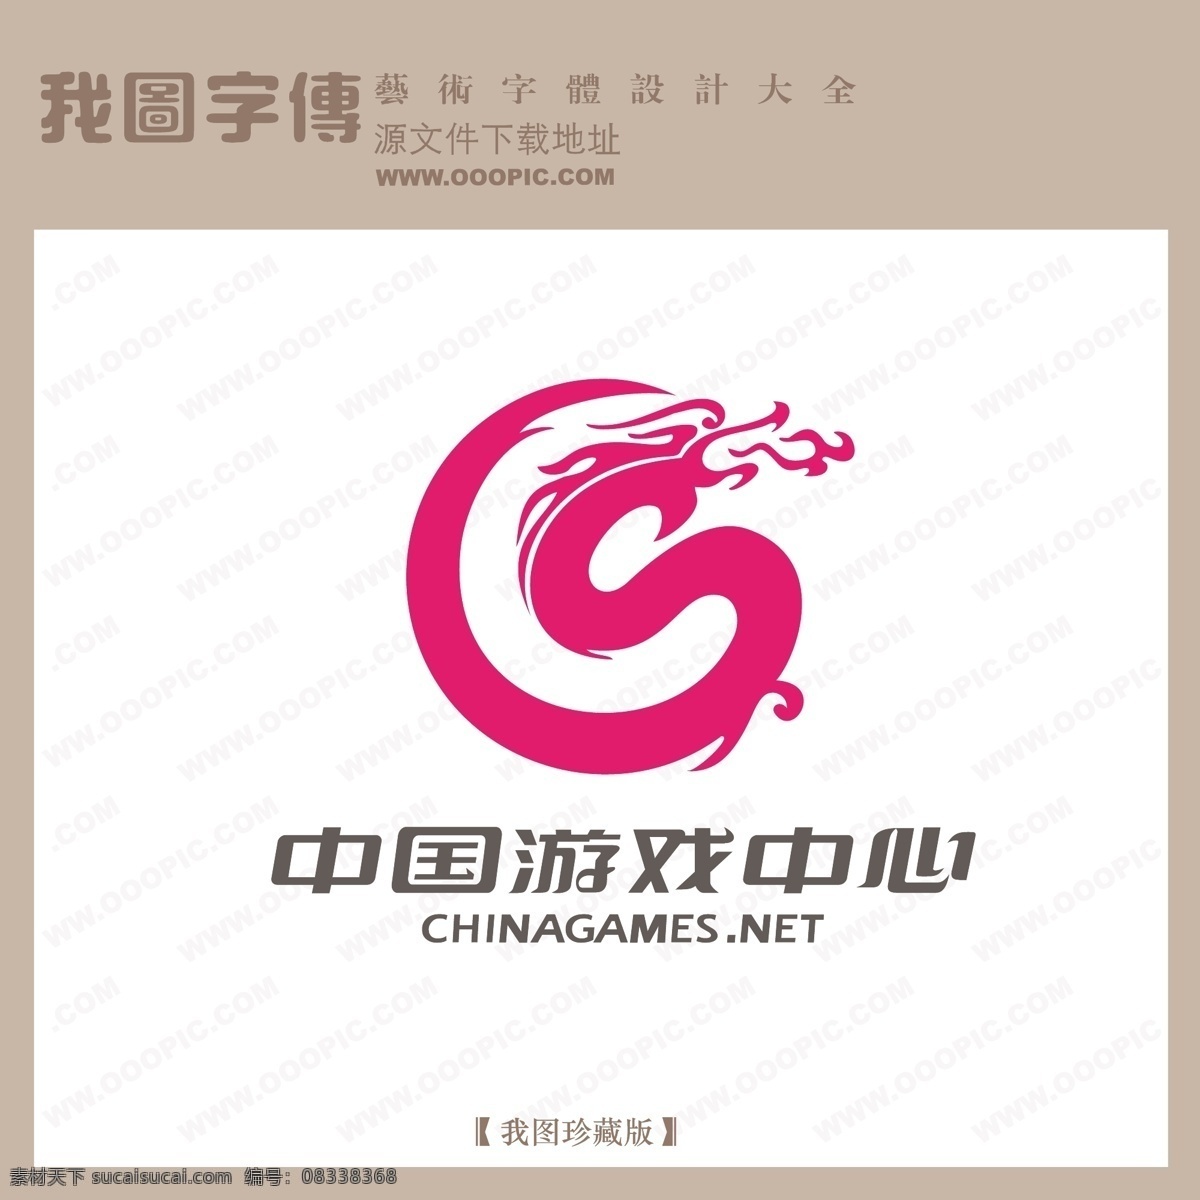 矢量logo 中国游戏中心 白色